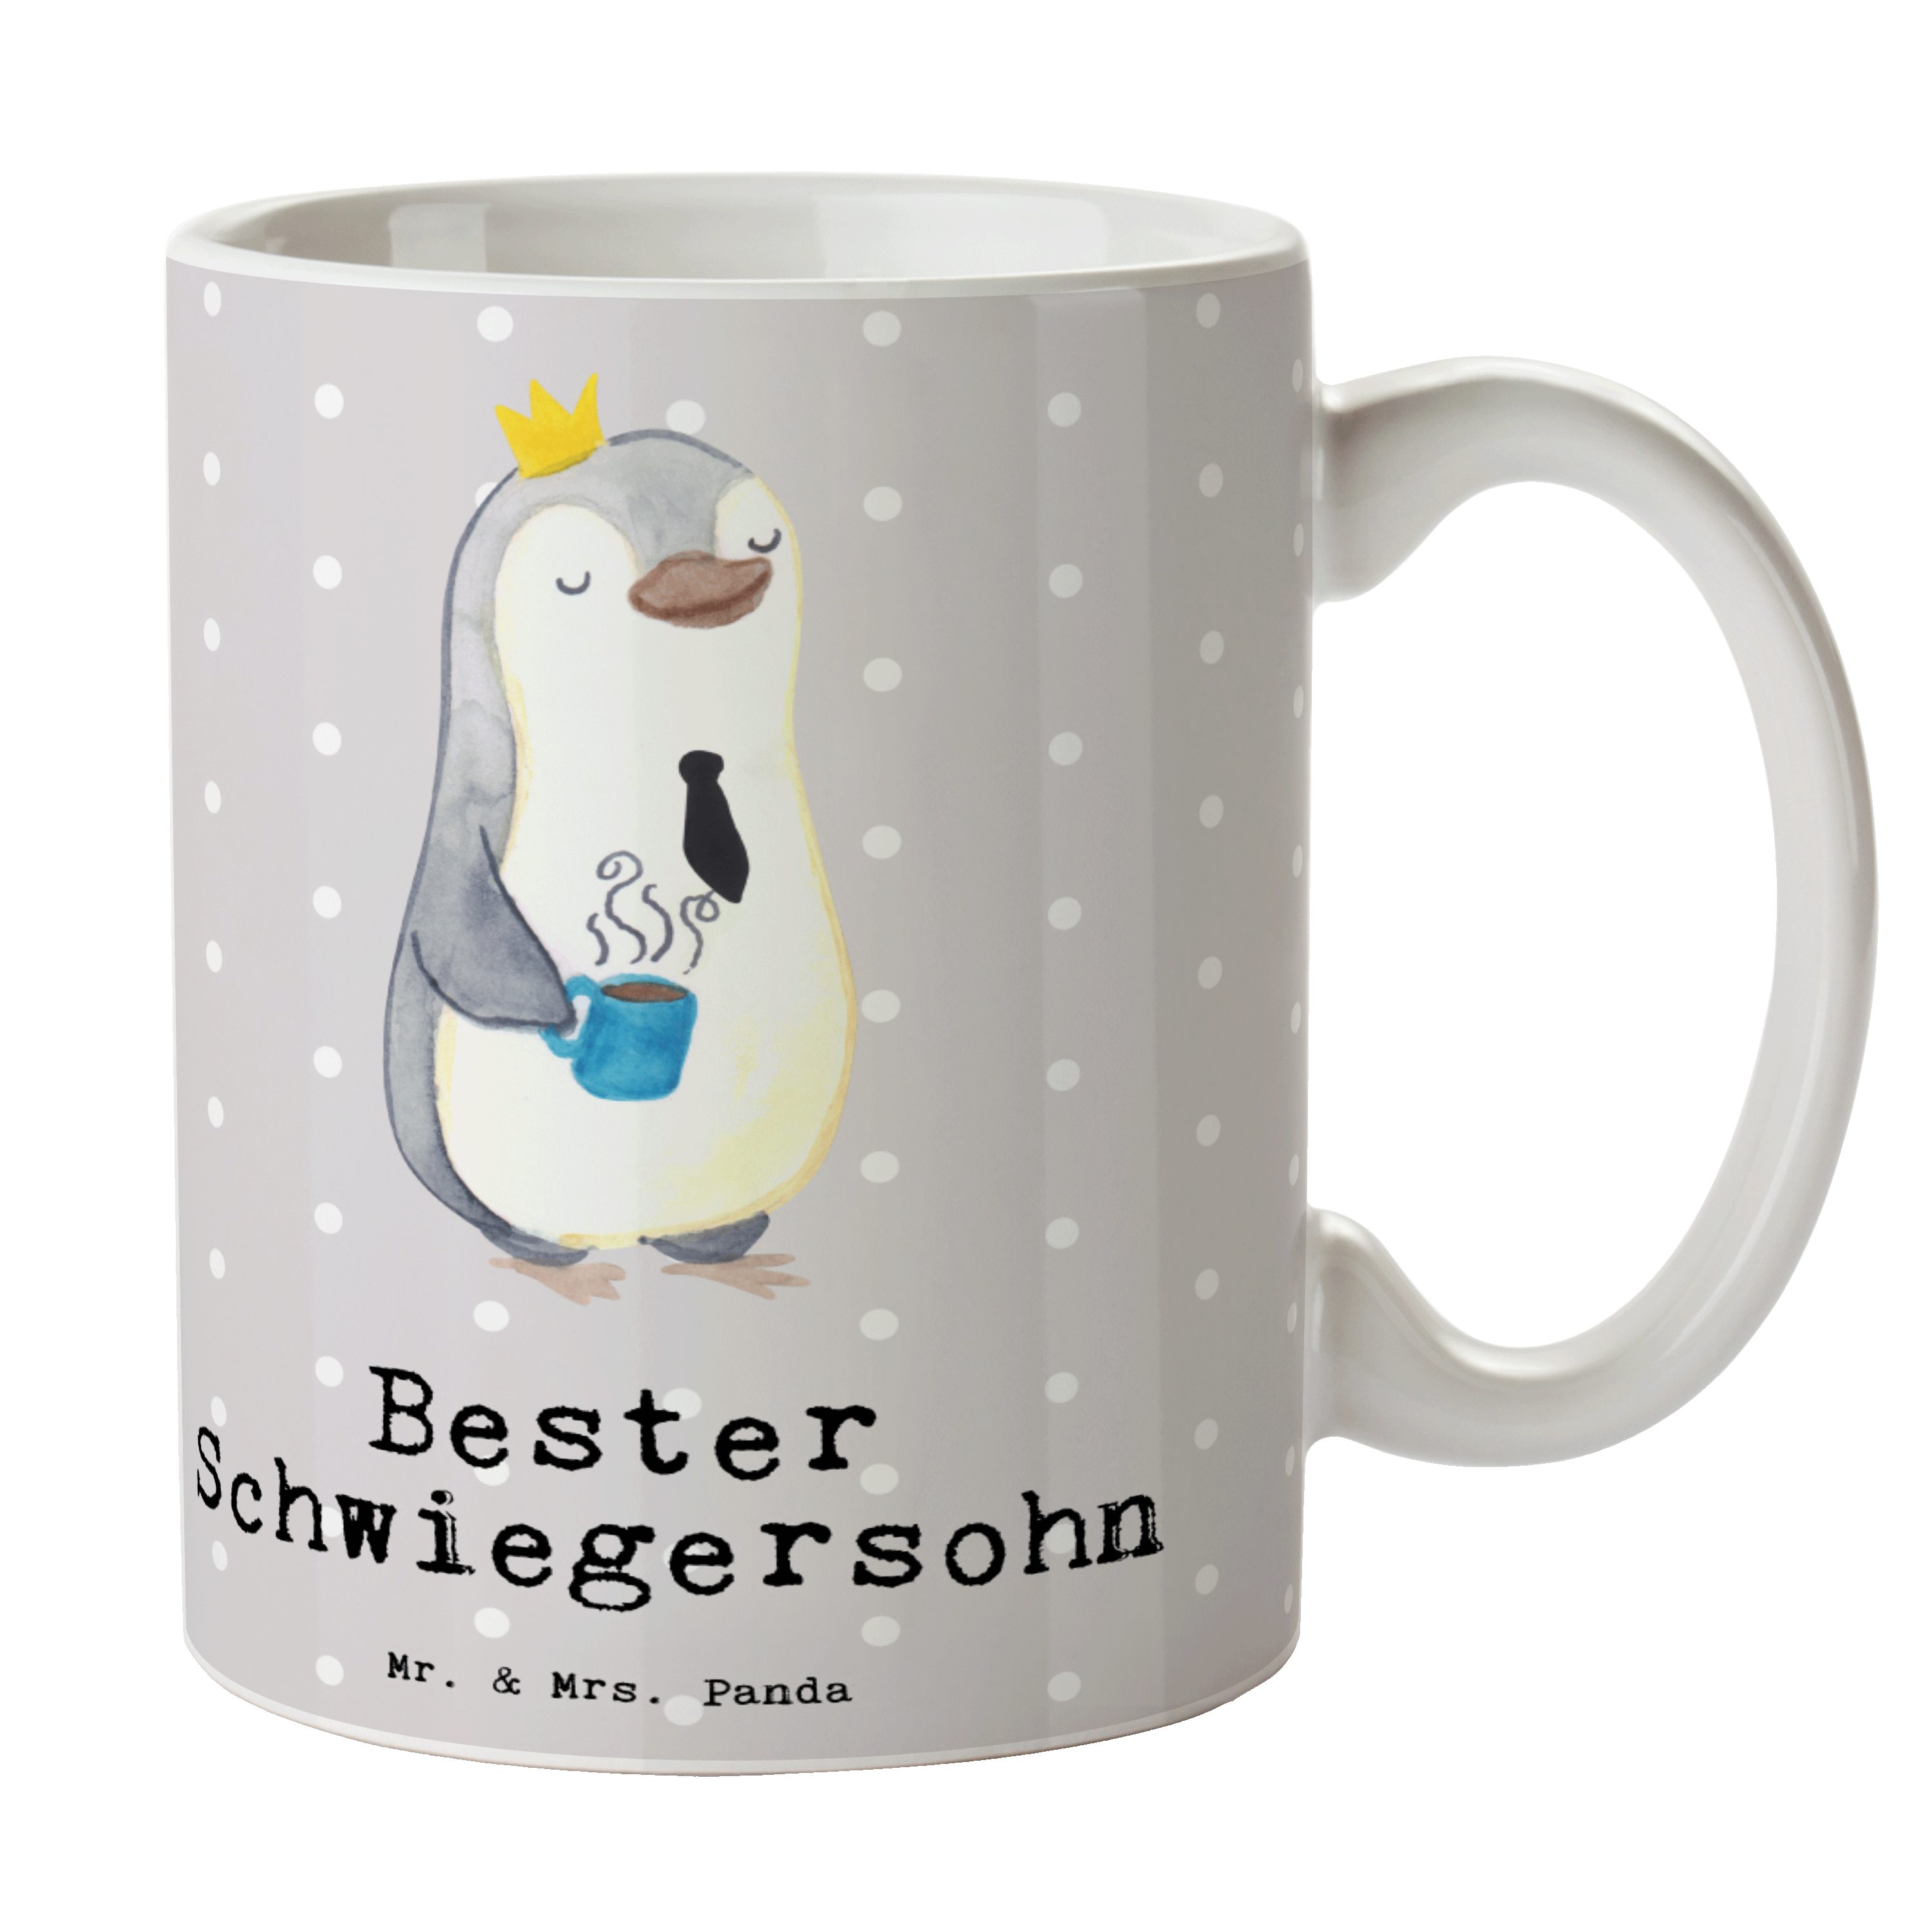 Mr. & Mrs. Panda Tasse Pinguin Bester Schwiegersohn - Grau Pastell - Geschenk, Frühstück, Ka, Keramik | Tassen